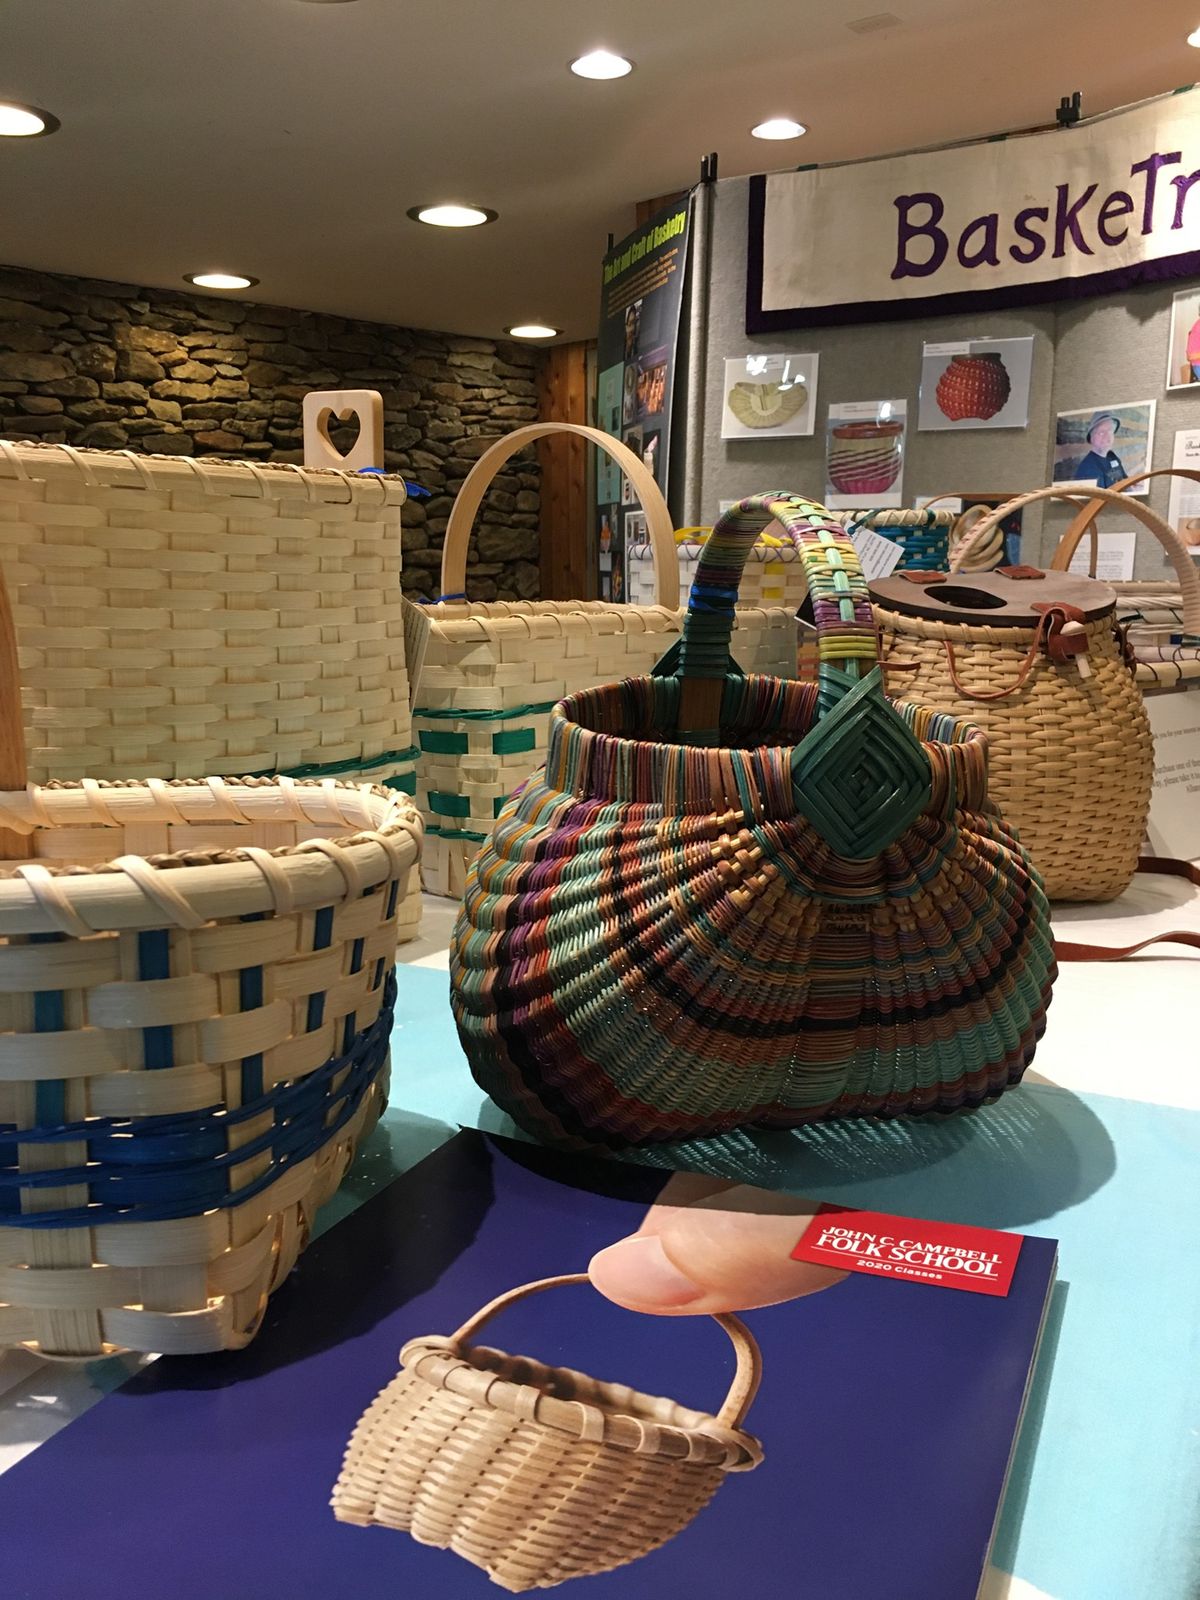 Basketry Workshop: How to make Oui Jar Baskets